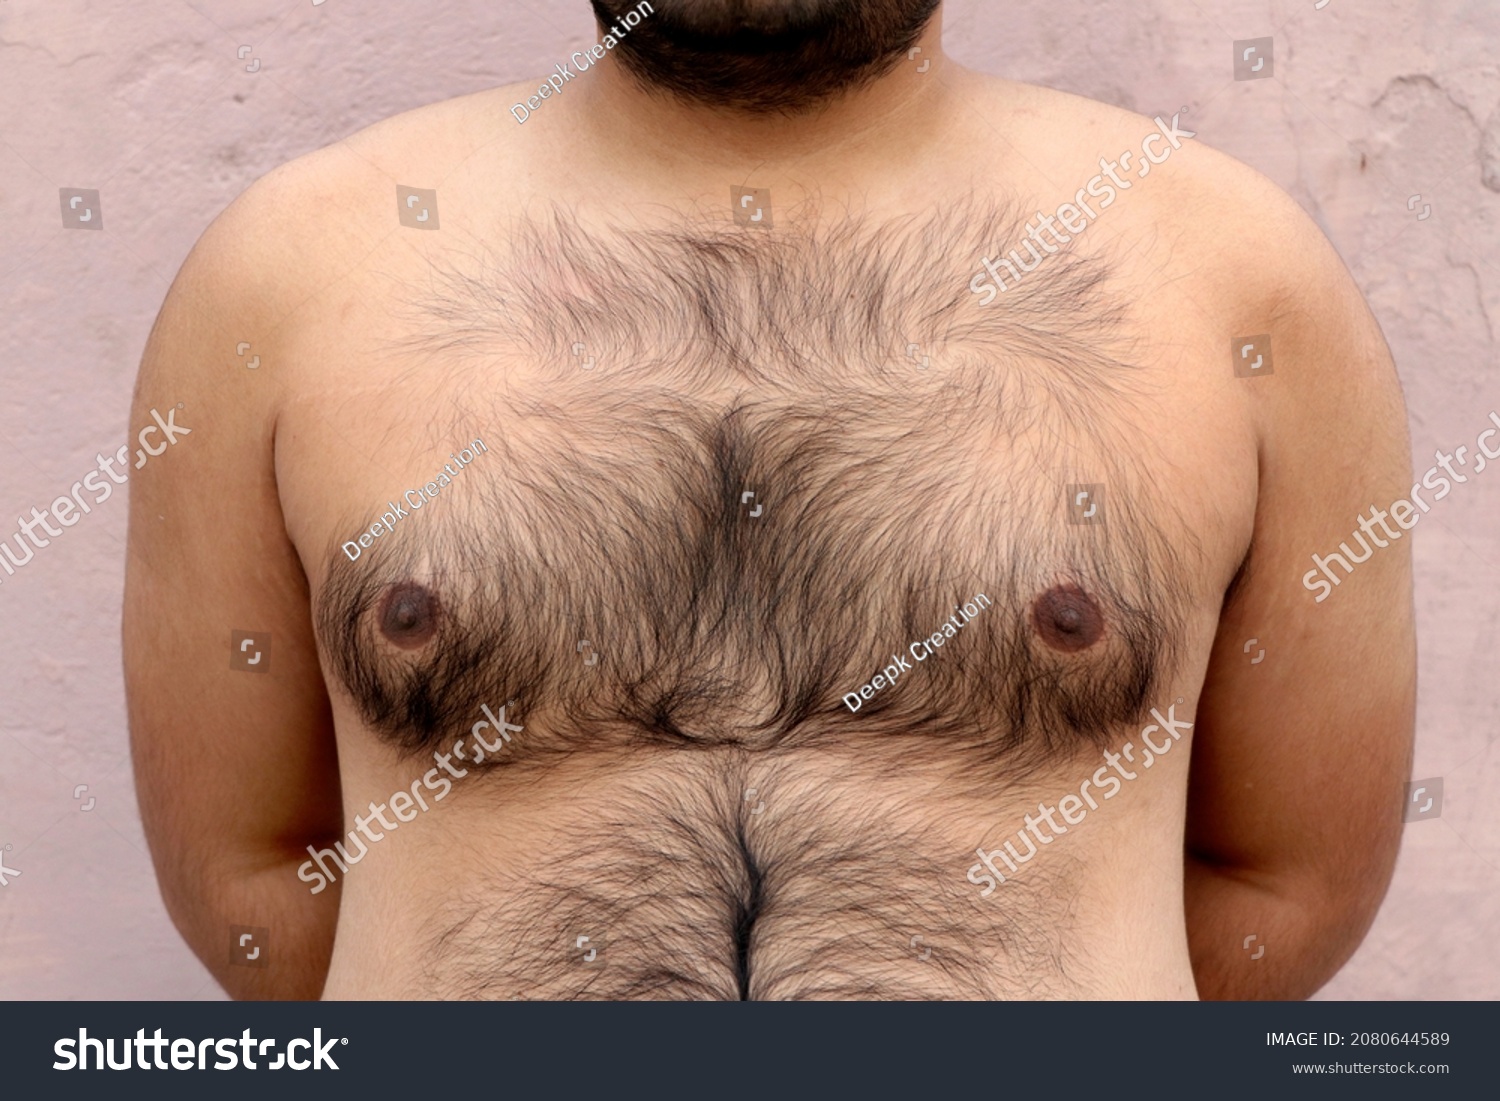 волосатая грудь женщин фото 84